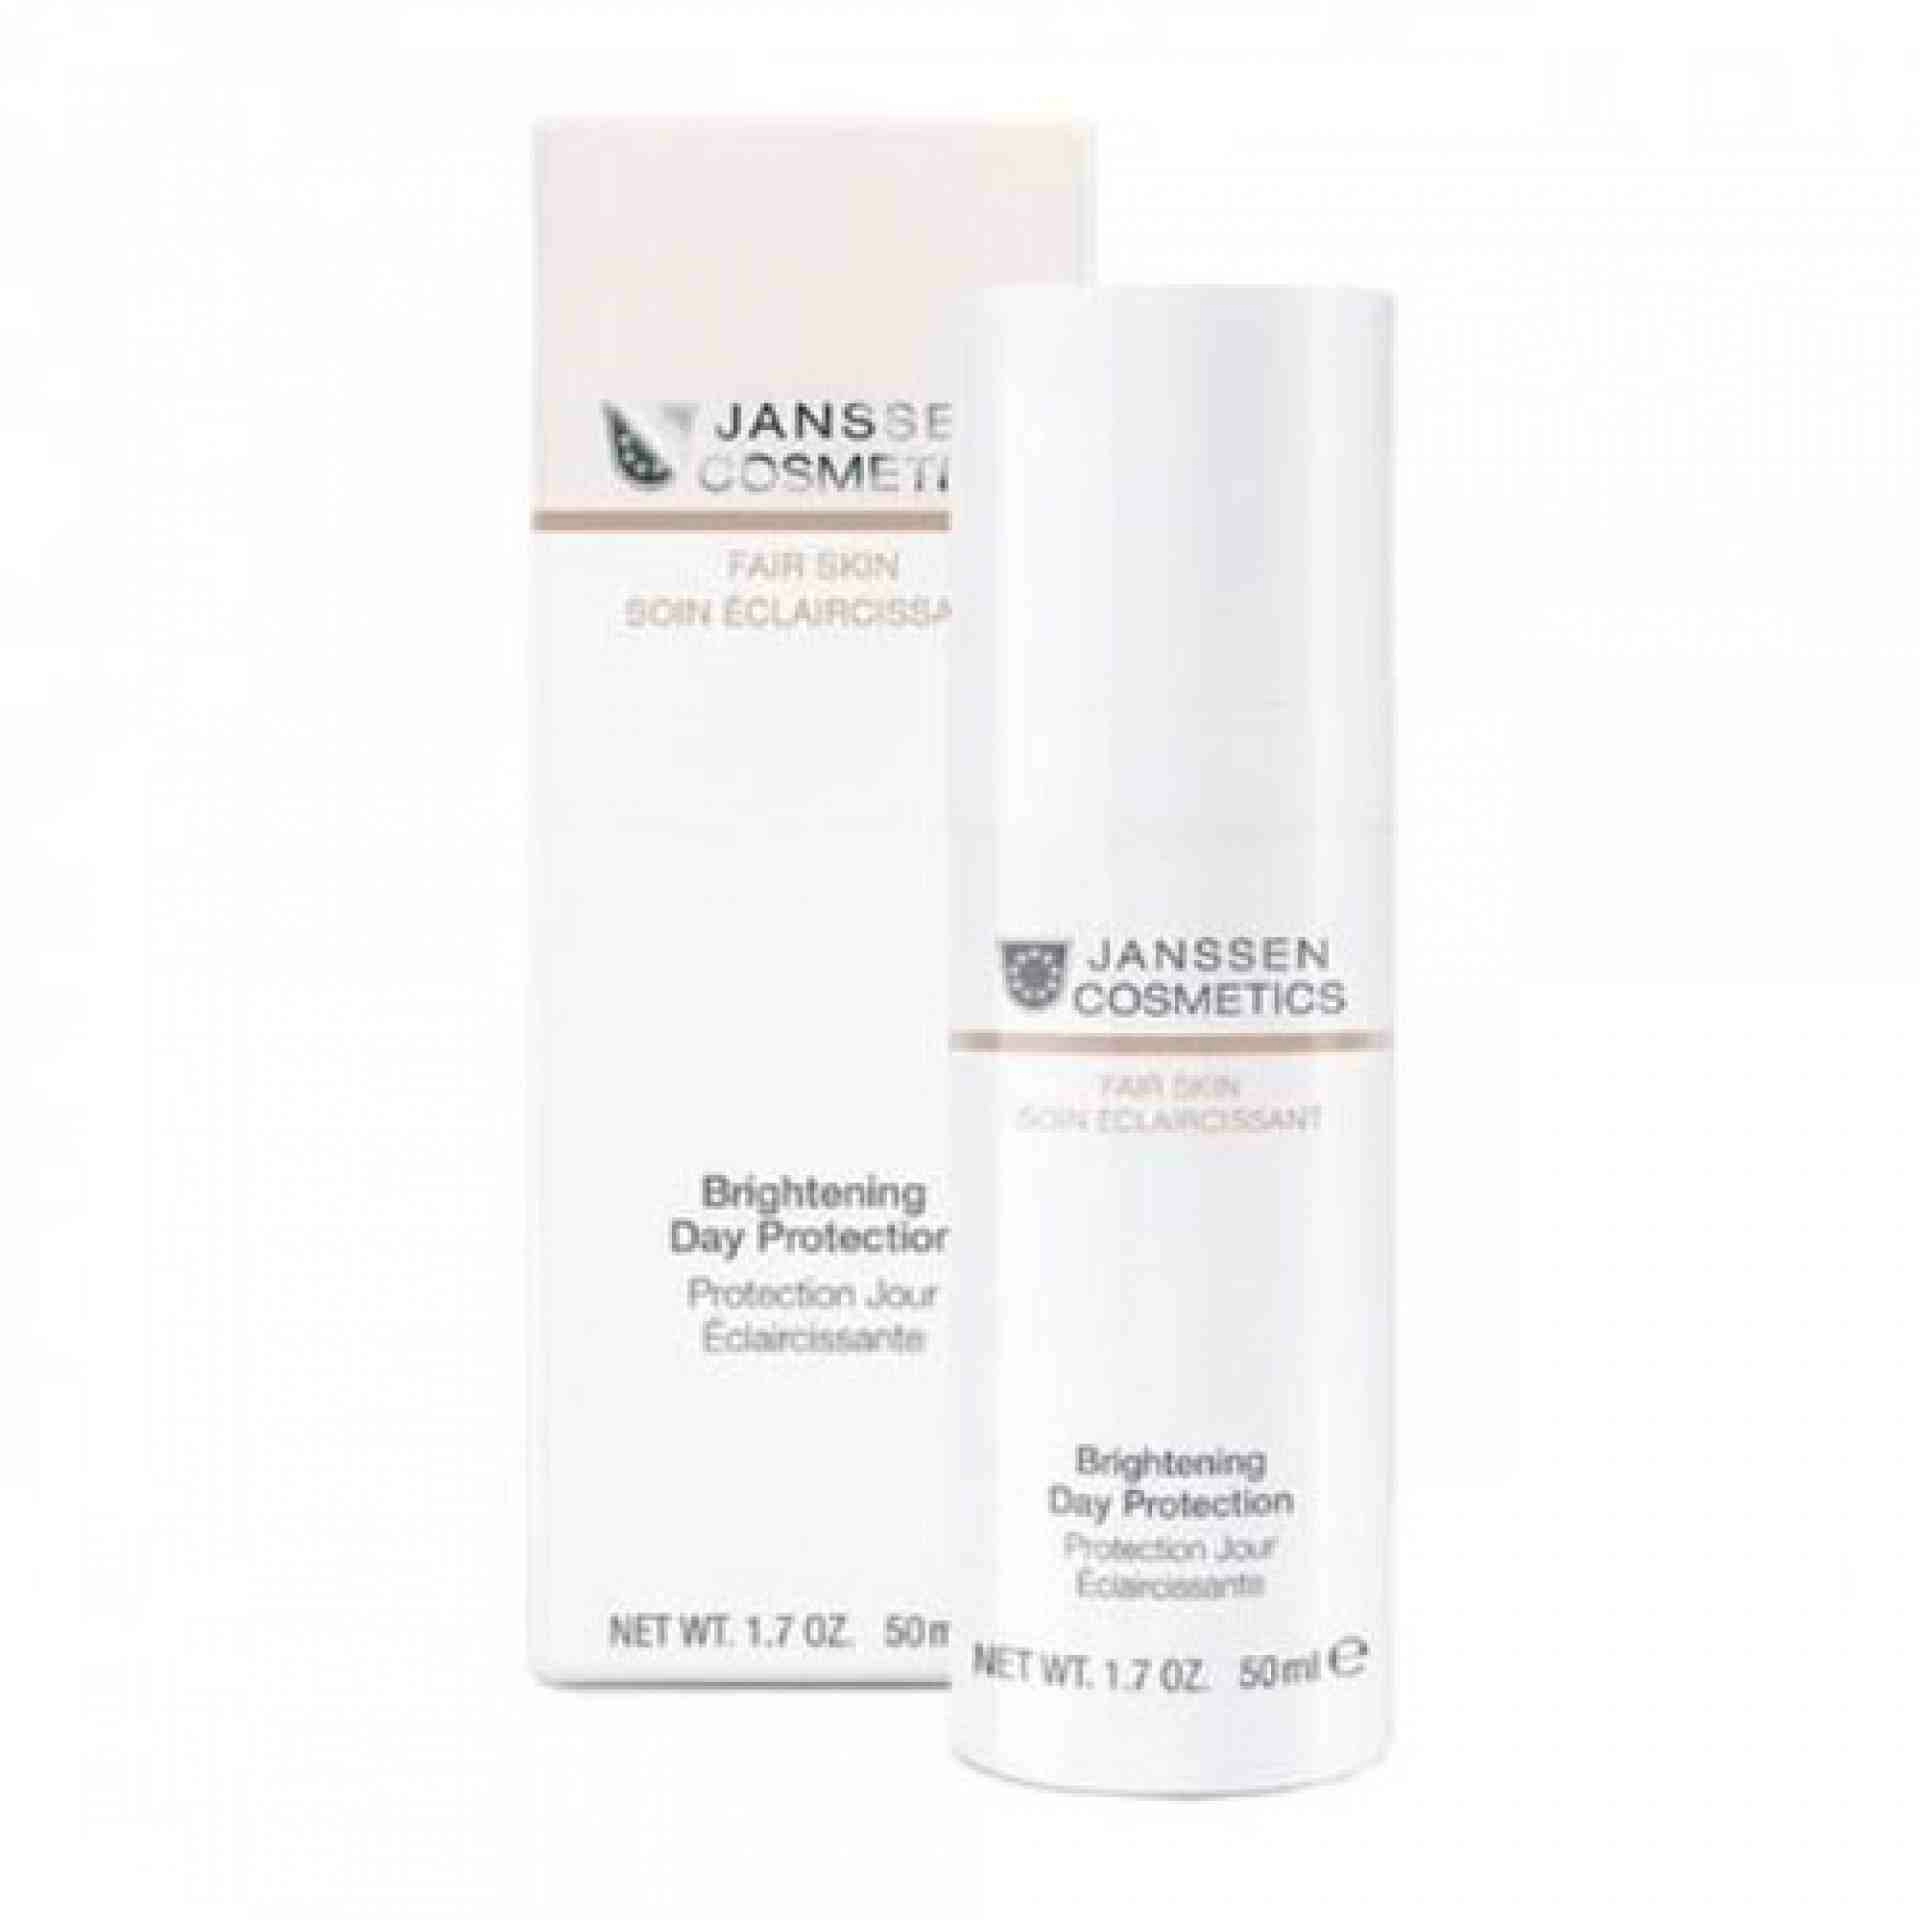 Fair Skin Brightening Day Protection | Crema despigmentante 50ml - Janssen Cosmetics ®